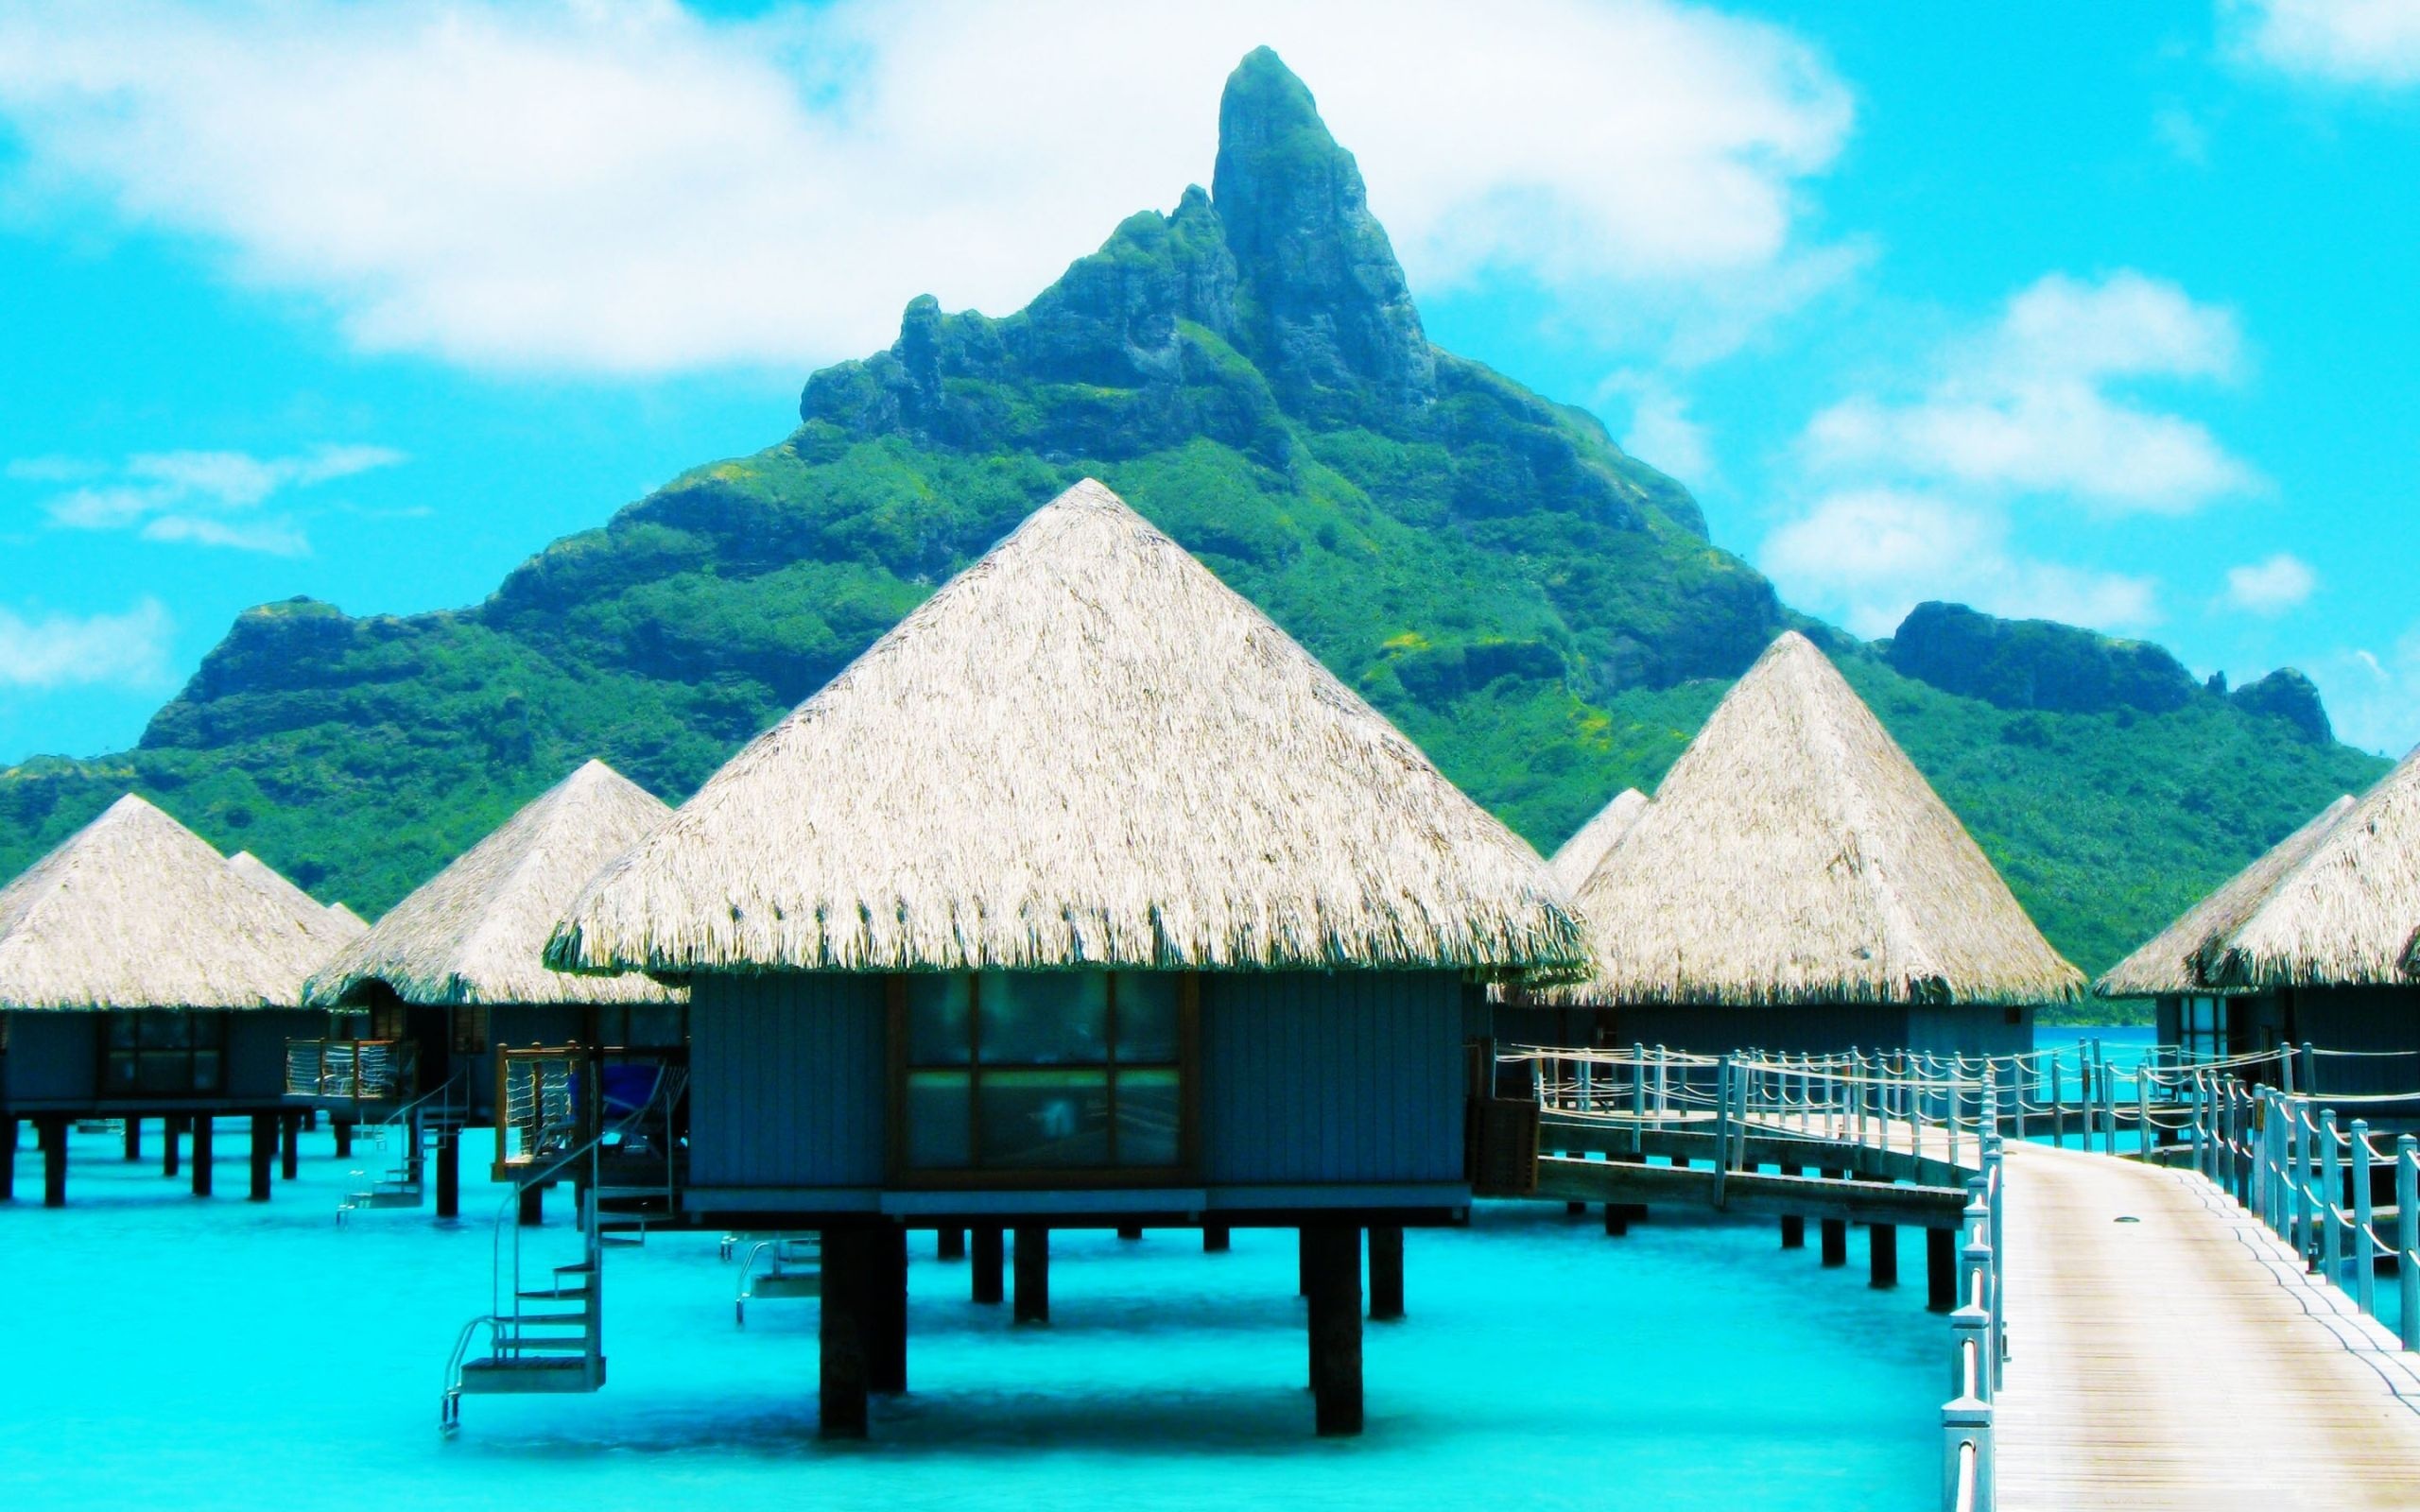 Bora Bora: Resort, Authentic Polynesian style and architecture, Villas. 2560x1600 HD Wallpaper.